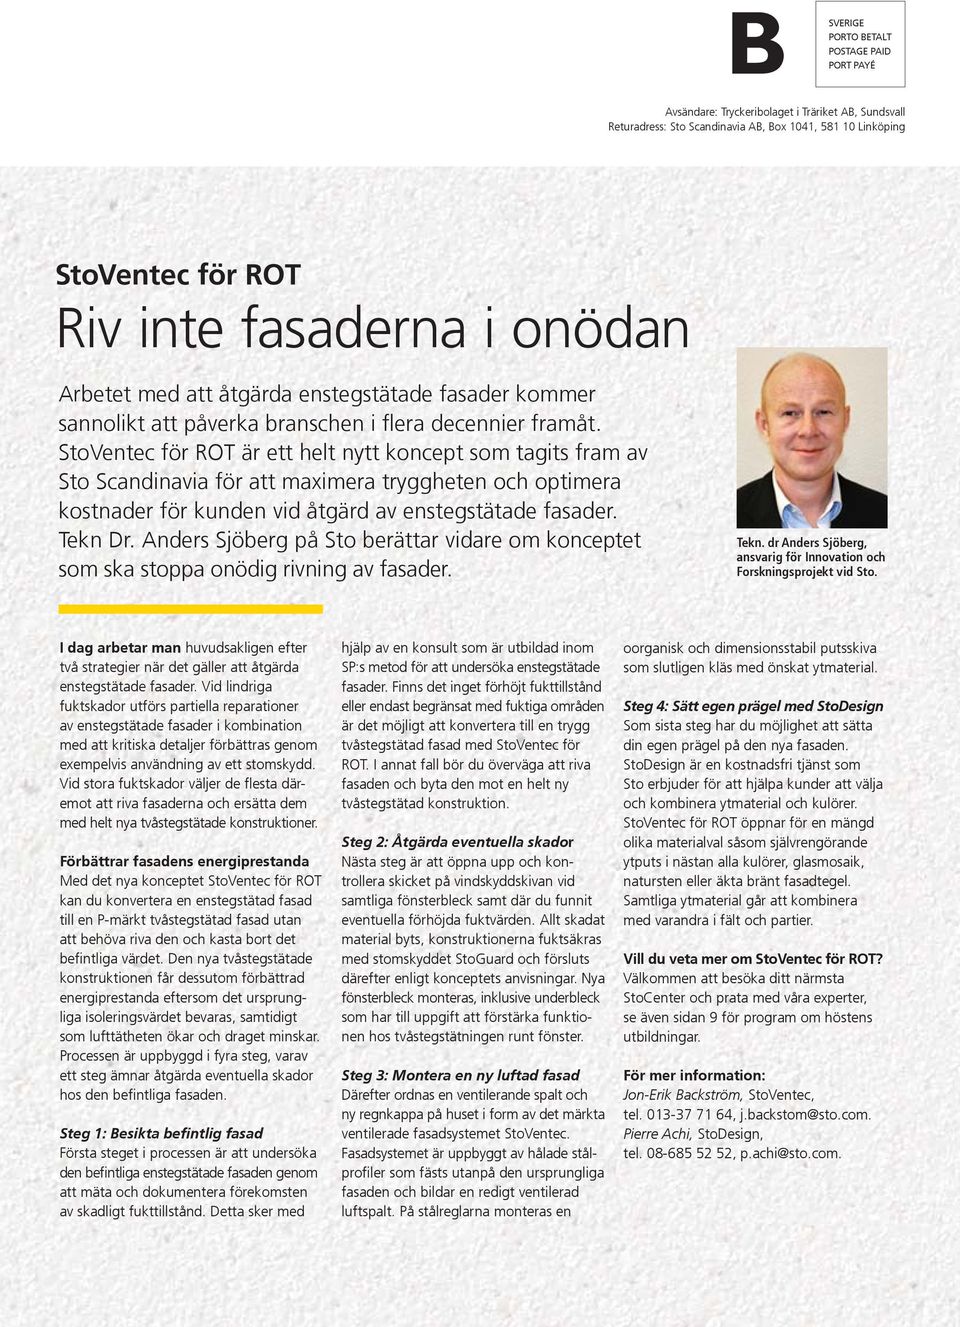 StoVentec för ROT är ett helt nytt koncept som tagits fram av Sto Scandinavia för att maximera tryggheten och optimera kostnader för kunden vid åtgärd av enstegstätade fasader. Tekn Dr.